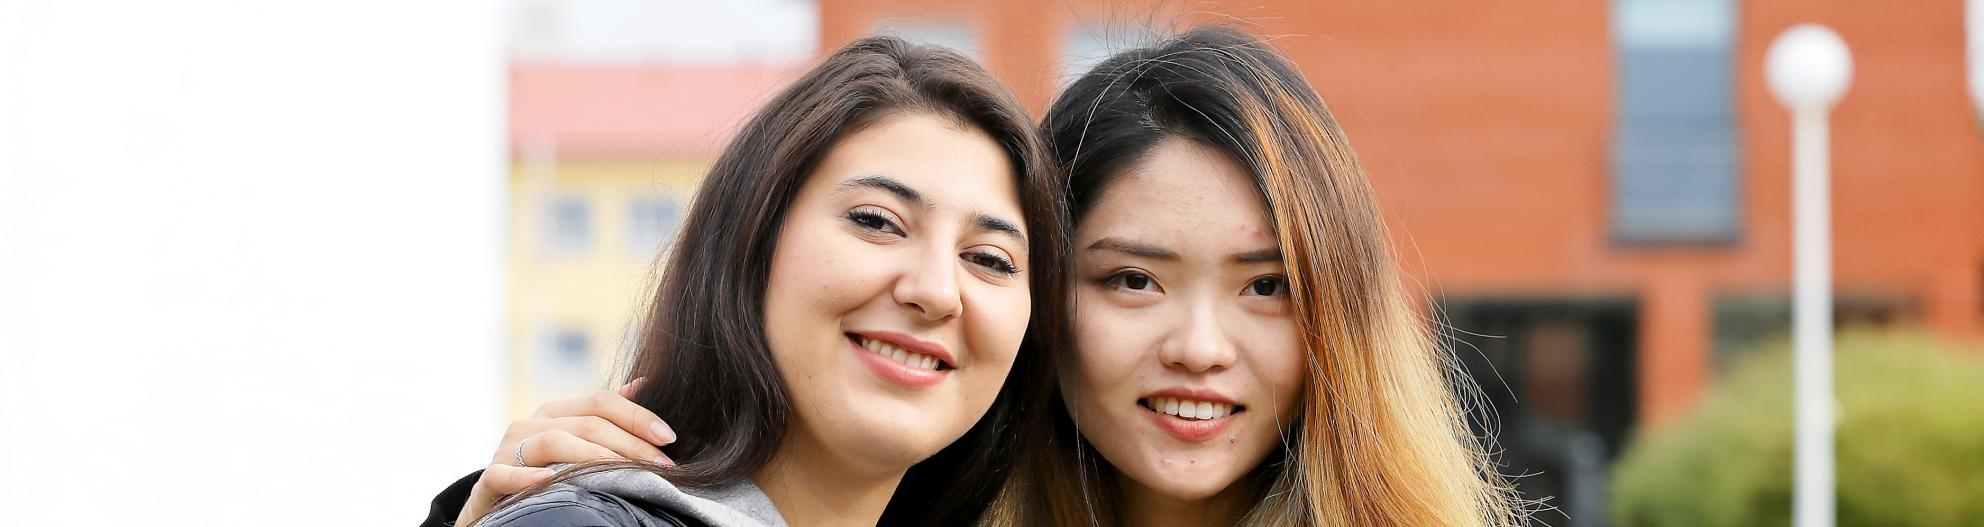 Kaksi opiskelijaa hymyilevät kameraan yliopiston kampuksella ulkona.